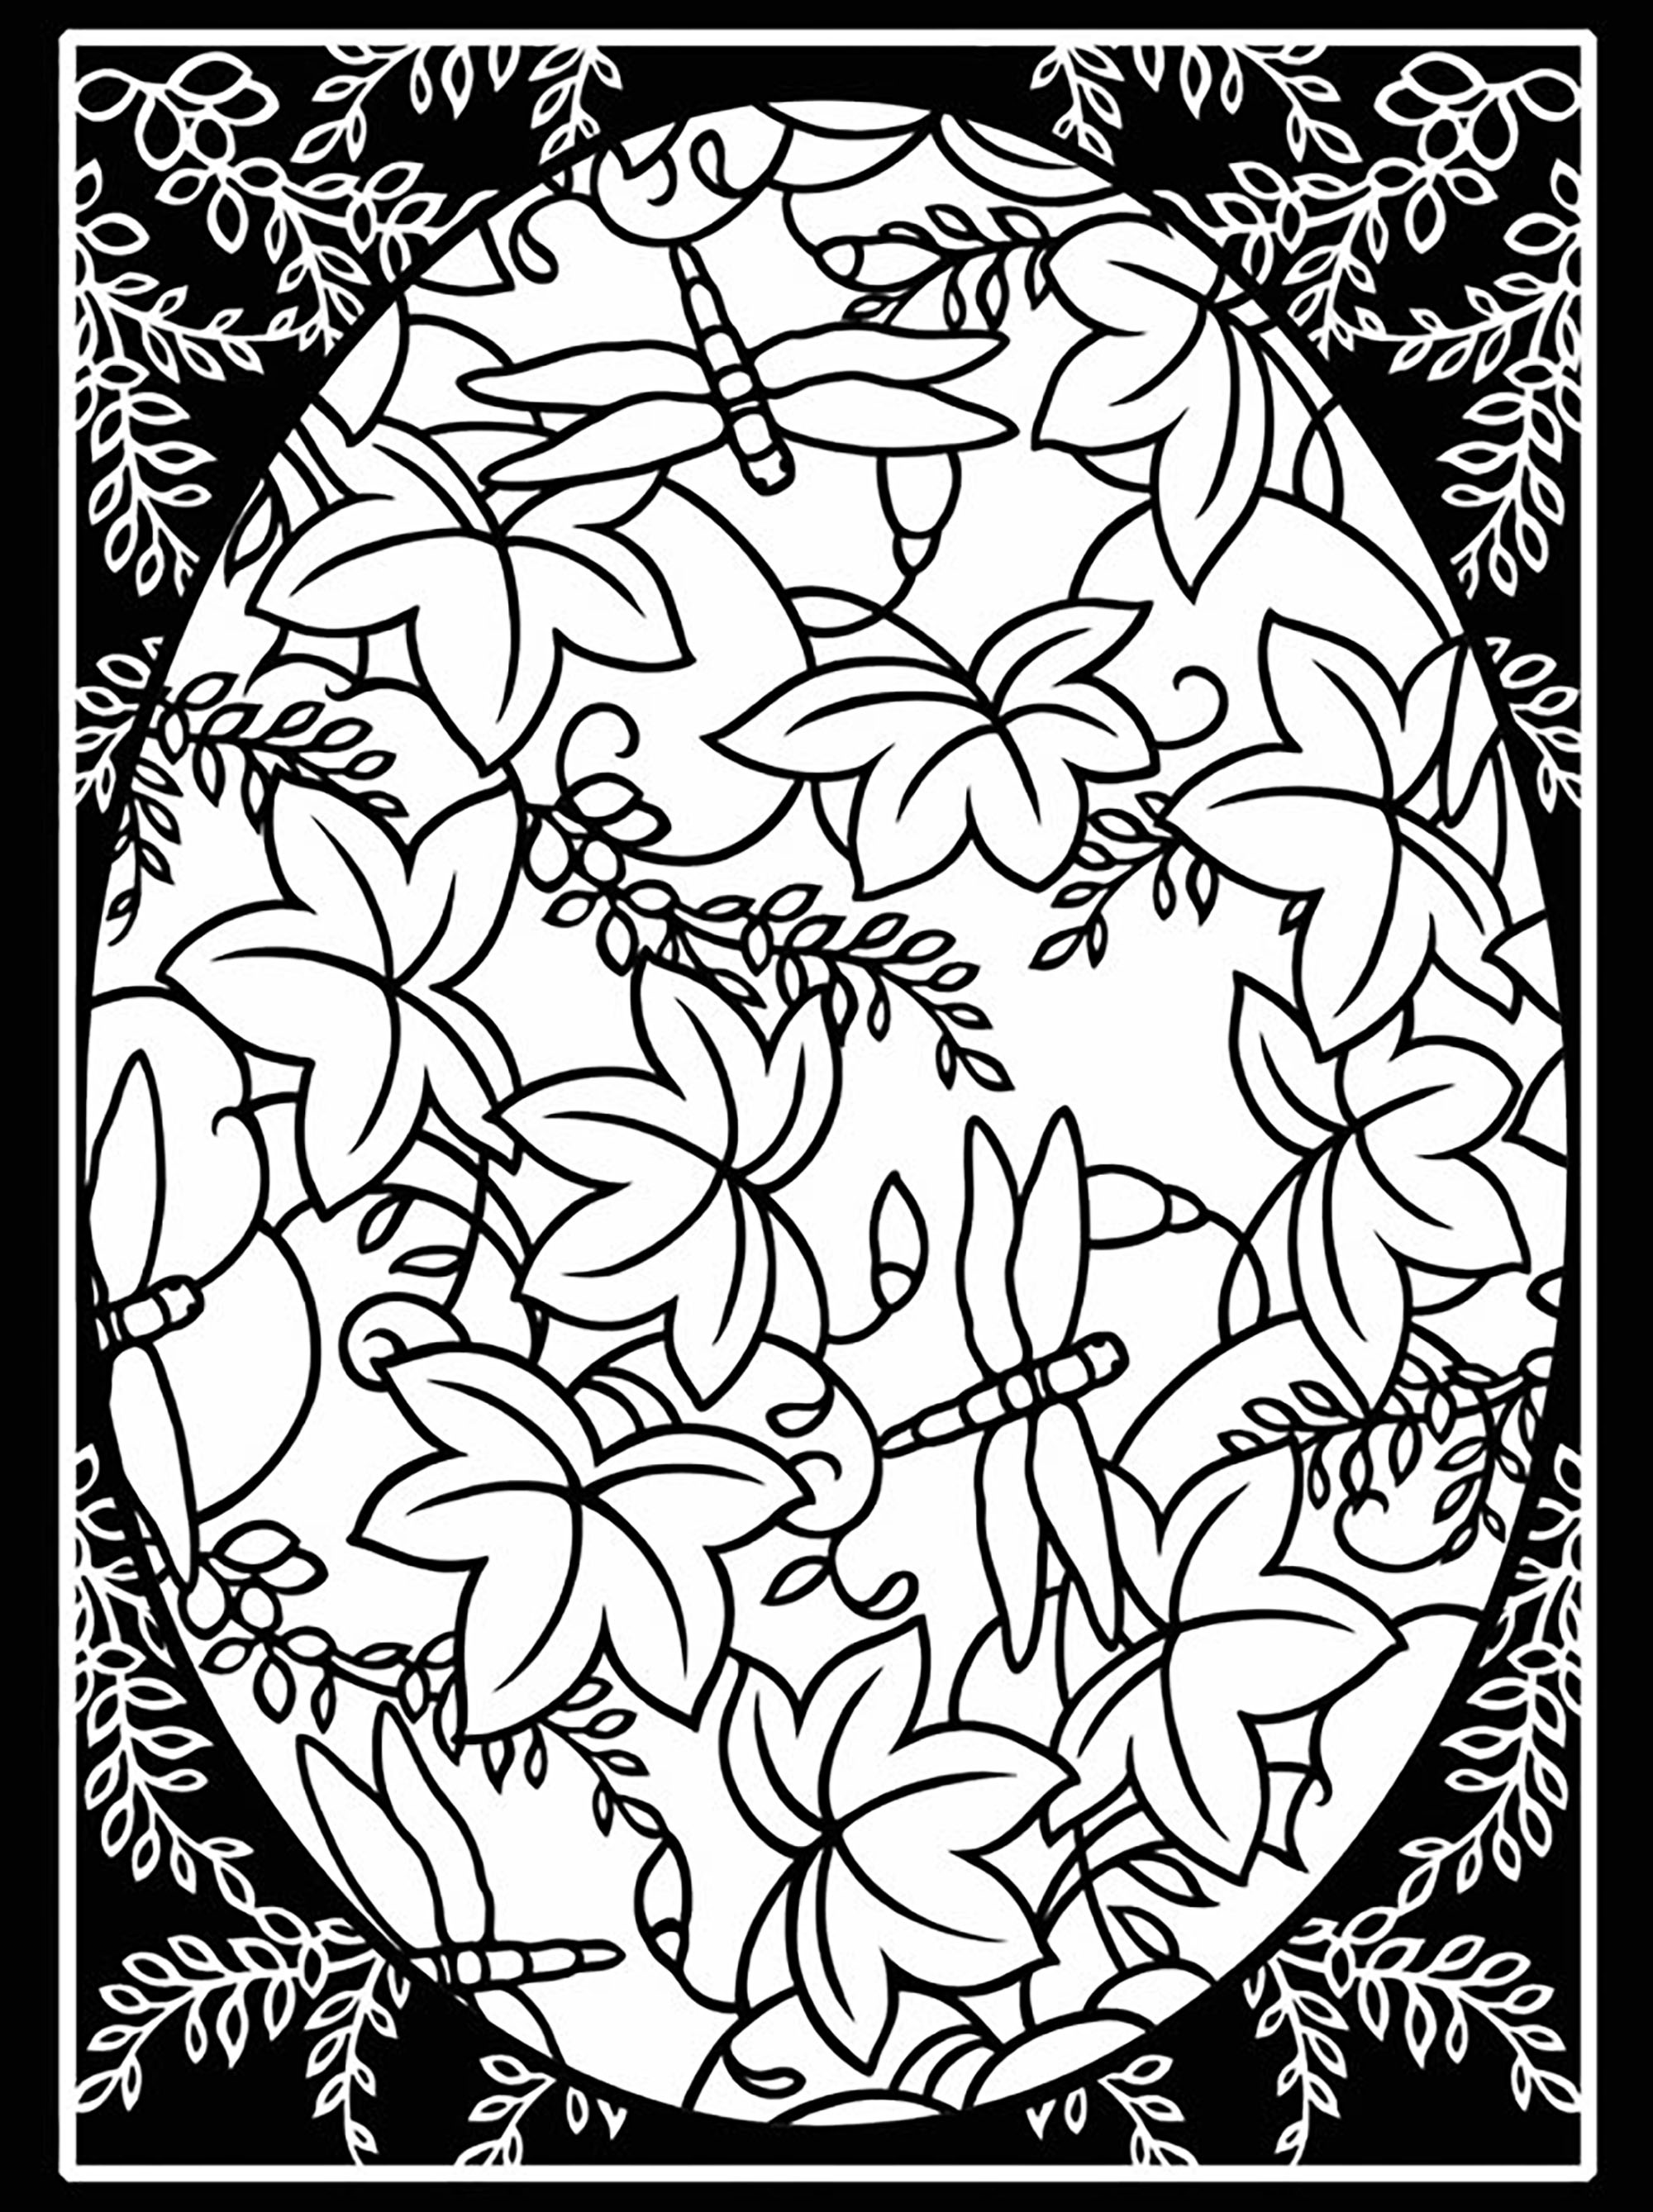 Ovo de Páscoa com folhas e rebordo grande, Artista : Dover Publications   Fonte : doverpublications